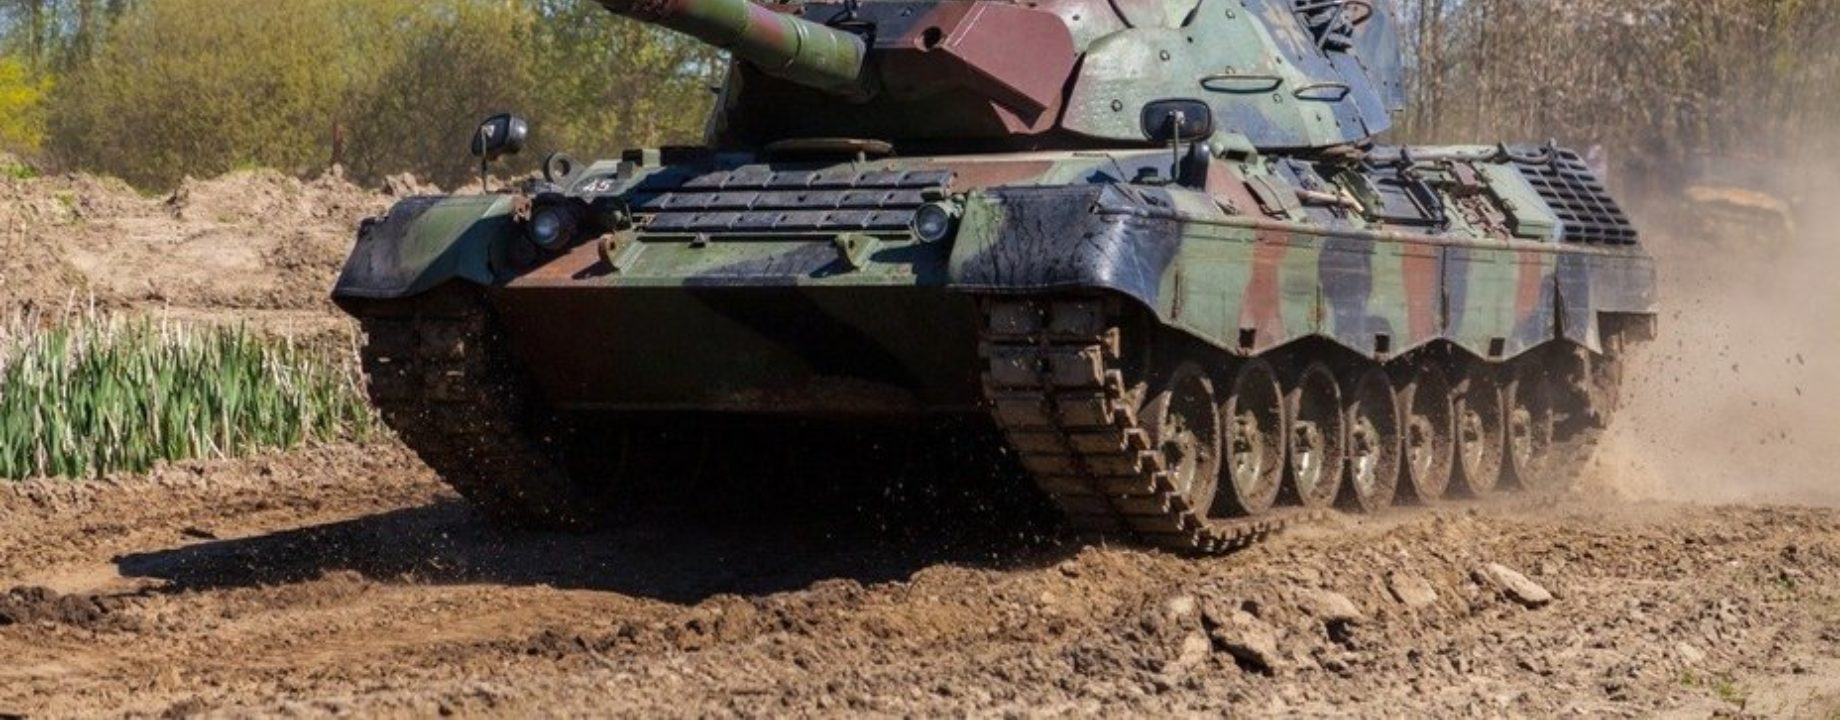 Tank leopard 1 q8982e9q 1606229821